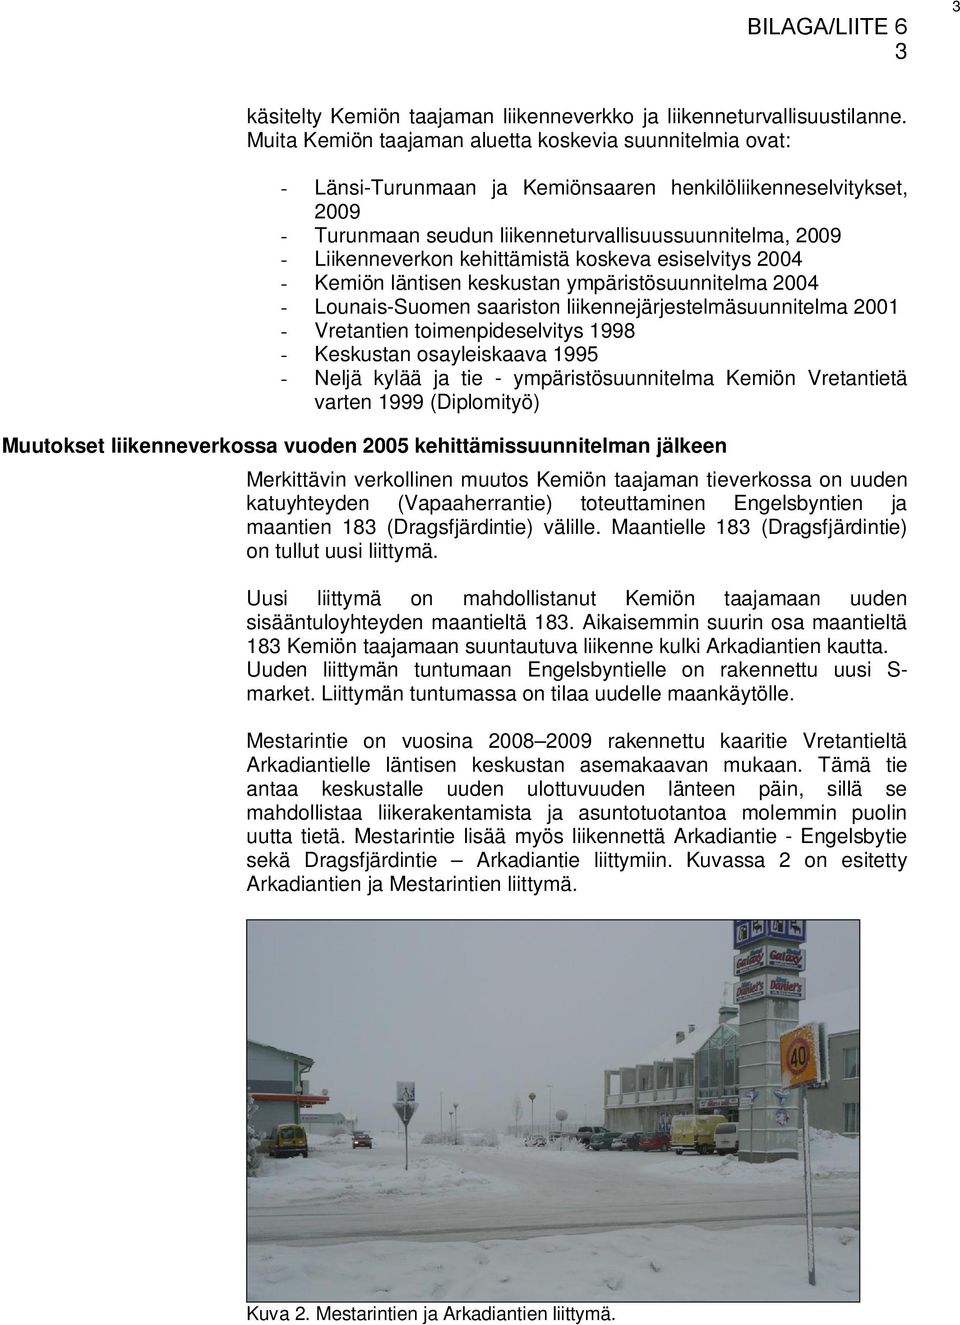 kehittämistä koskeva esiselvitys 2004 - Kemiön läntisen keskustan ympäristösuunnitelma 2004 - Lounais-Suomen saariston liikennejärjestelmäsuunnitelma 2001 - Vretantien toimenpideselvitys 1998 -